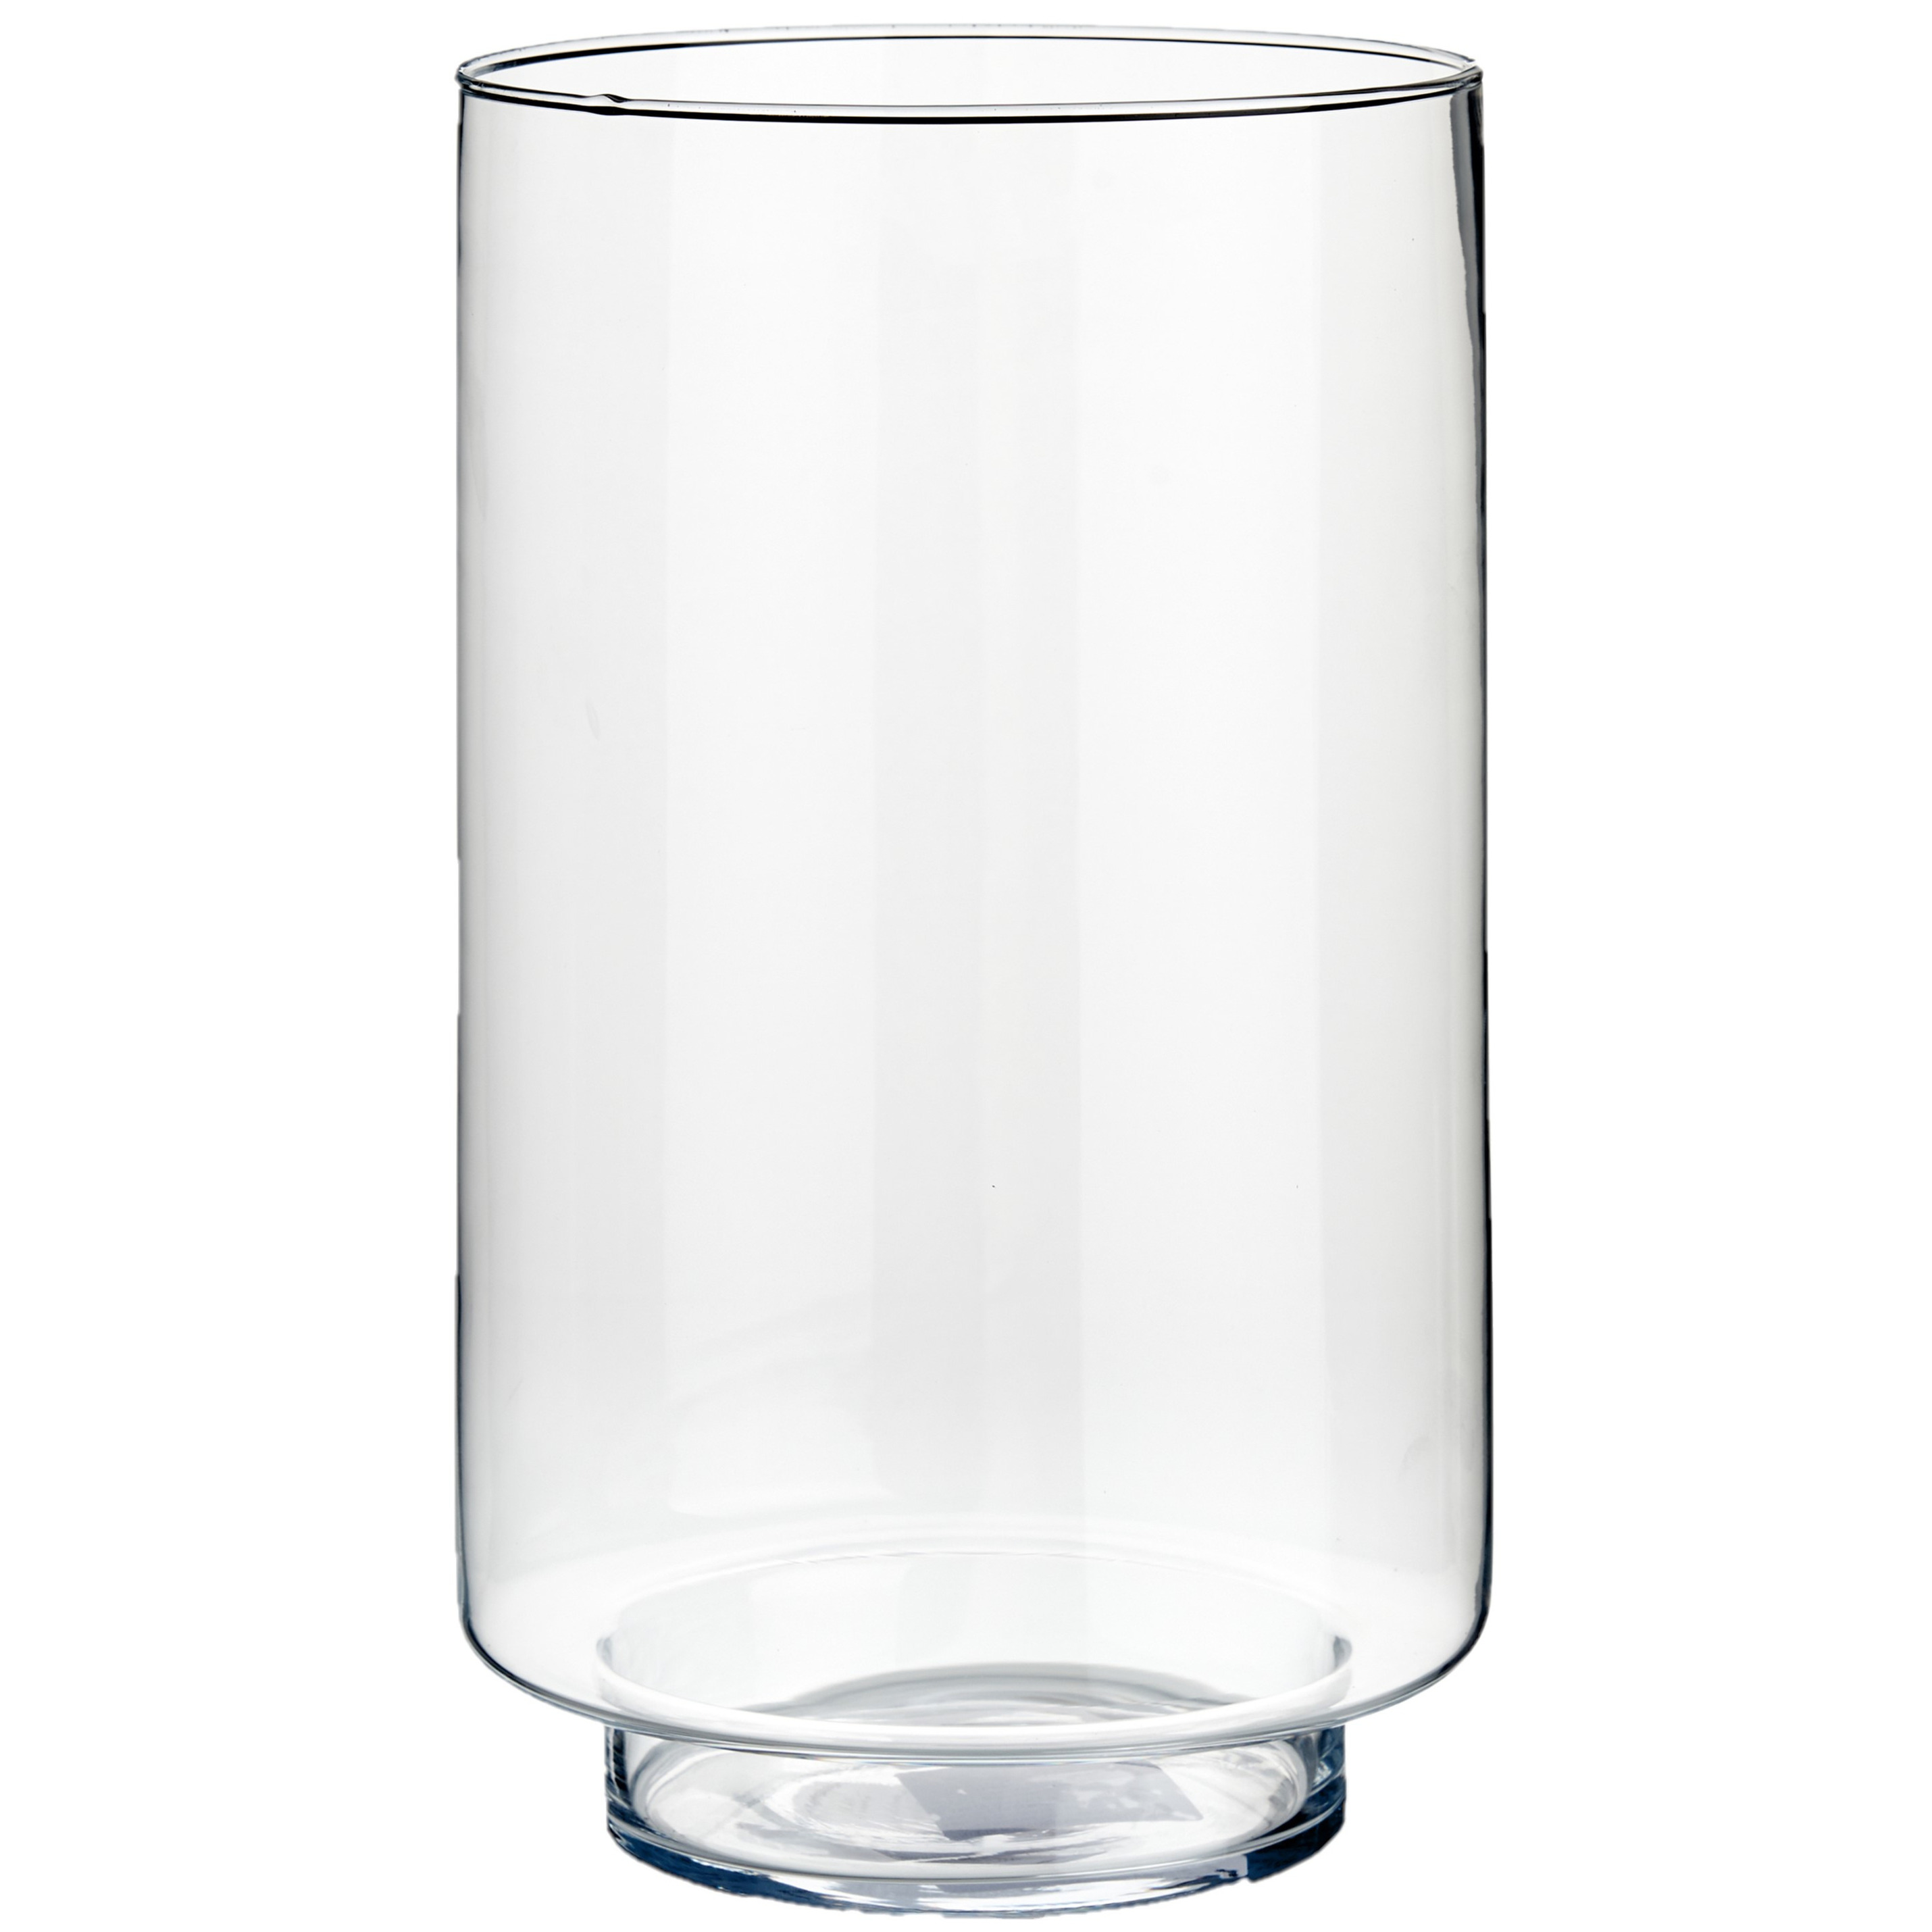 Bloemenvaas van glas 18 x 30 cm